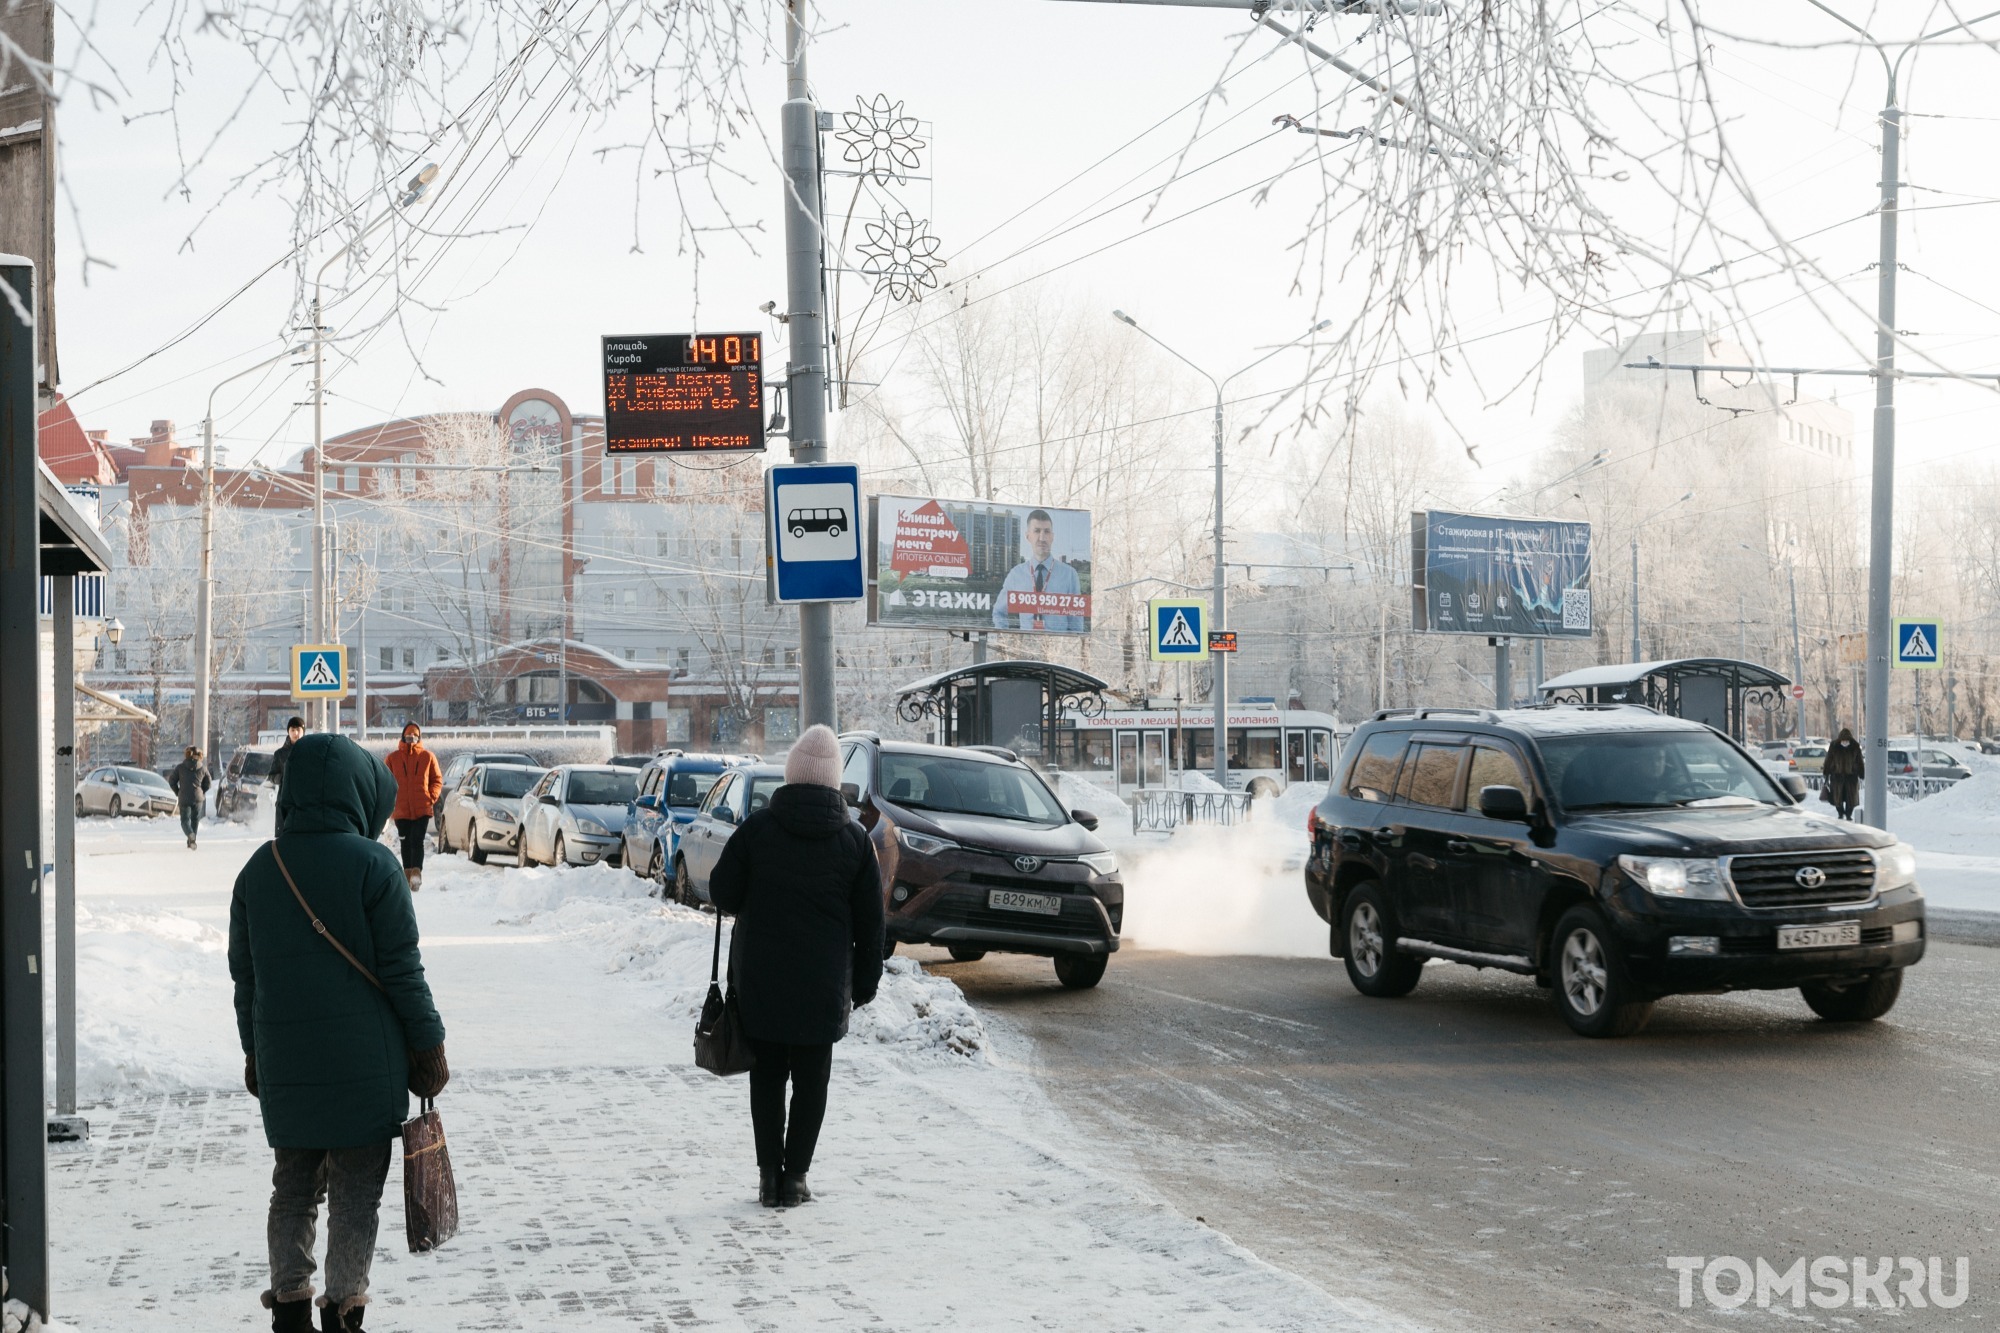 Еще 1 586 новых случаев заражения COVID-19 подтвердили в Томской области